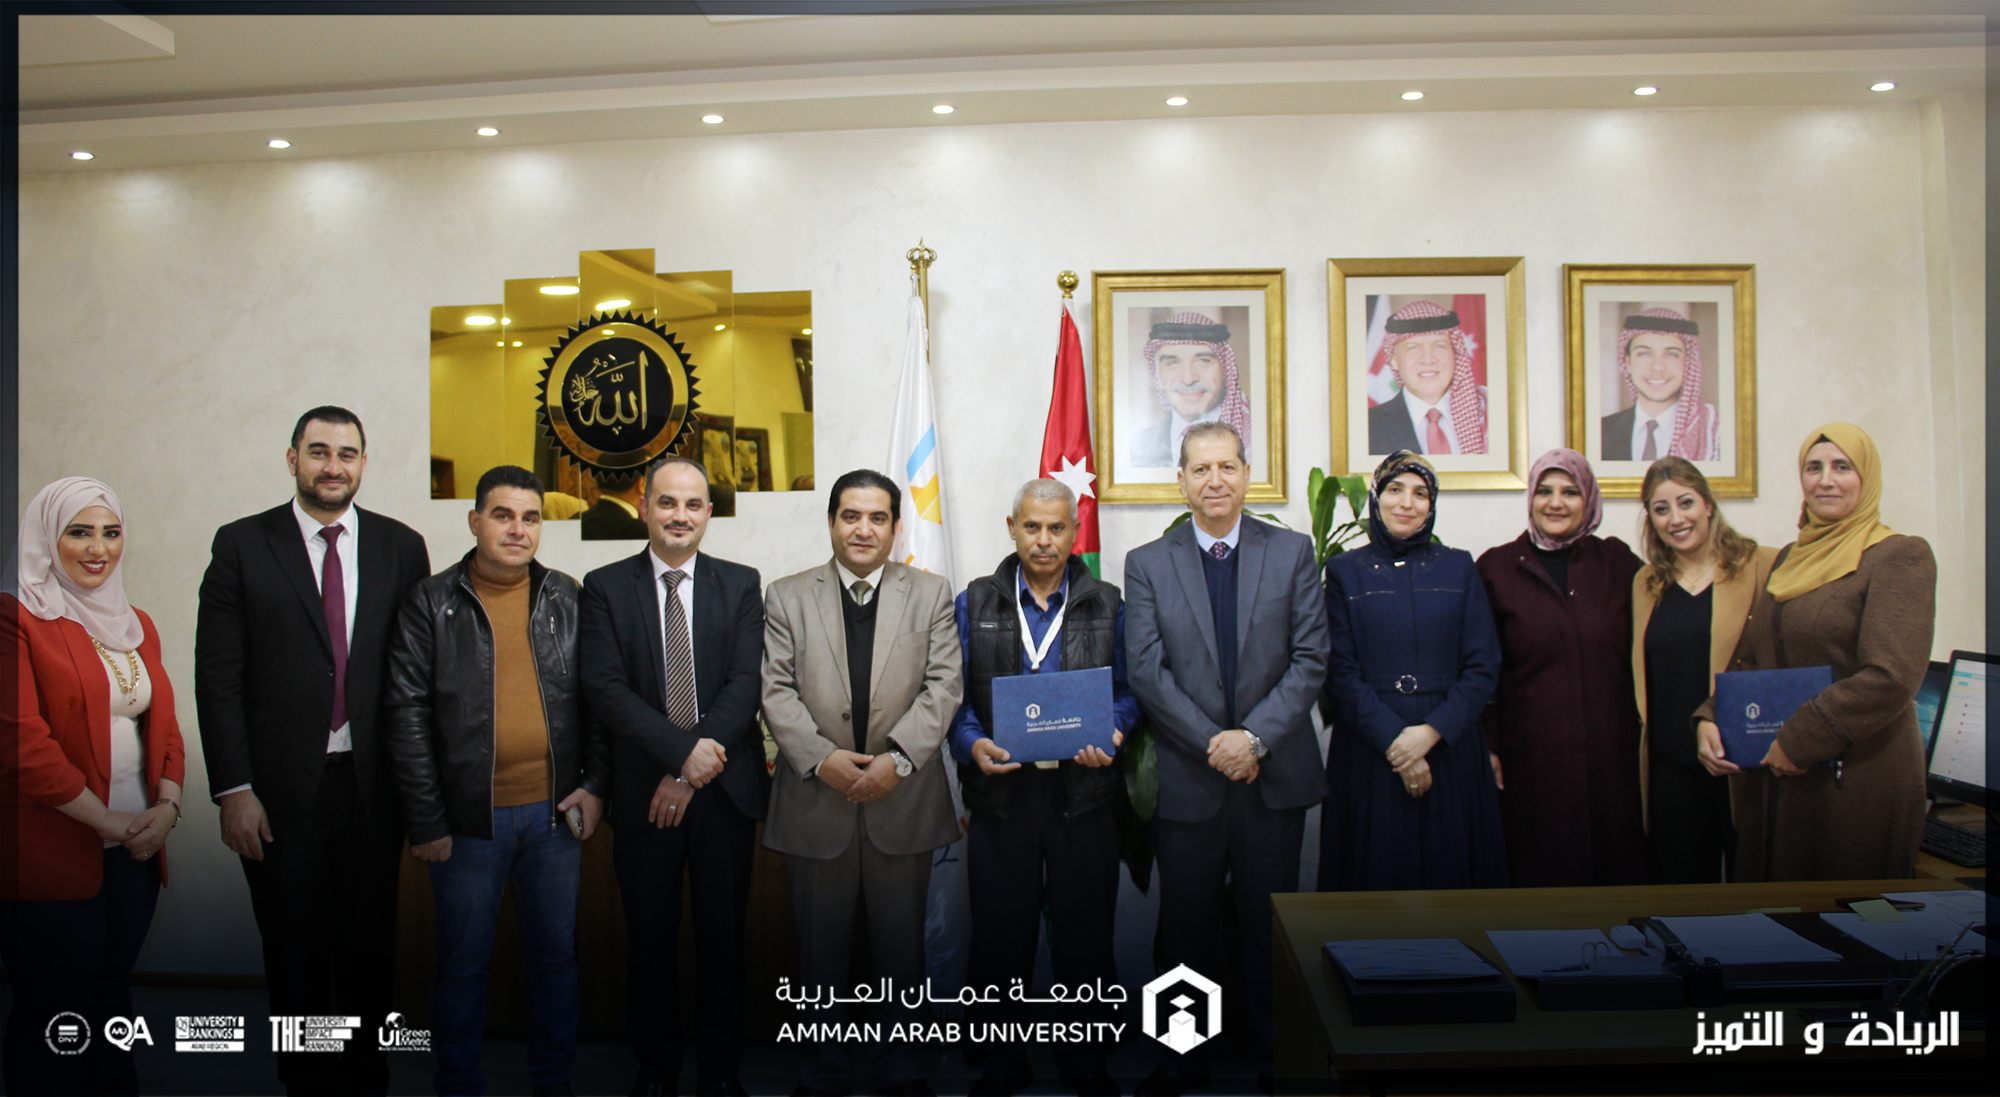 جائزة الموظف المتميز في عمان العربية لـ "عبد الرحمن أبو جعفر" و" عائشة الزواهرة"